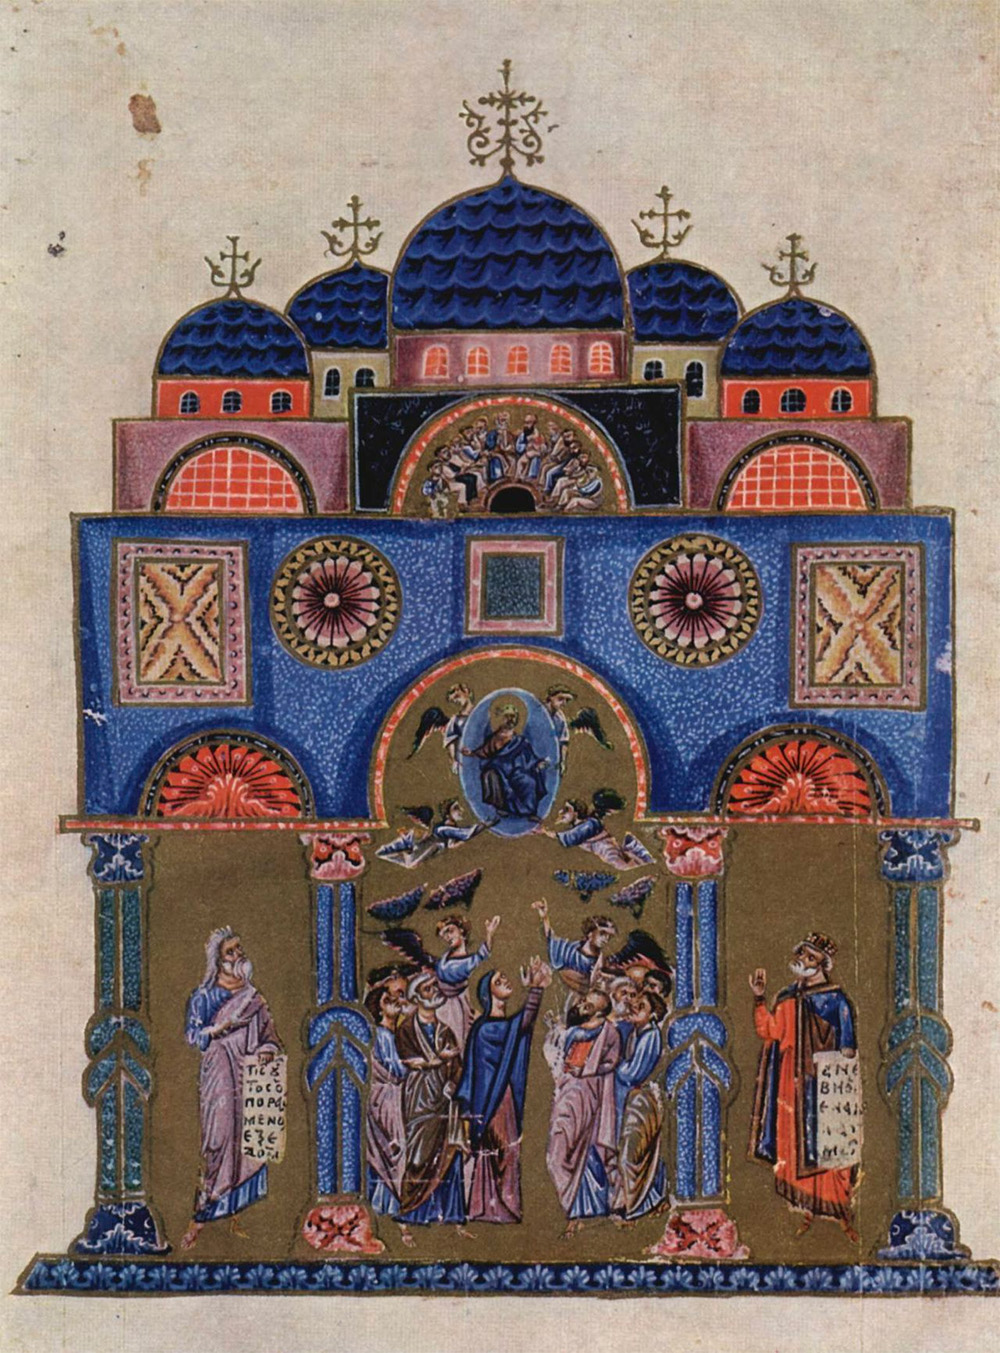 La iglesia de los Santos Apóstoles hacia 1100-50, según una miniatura de la época. 